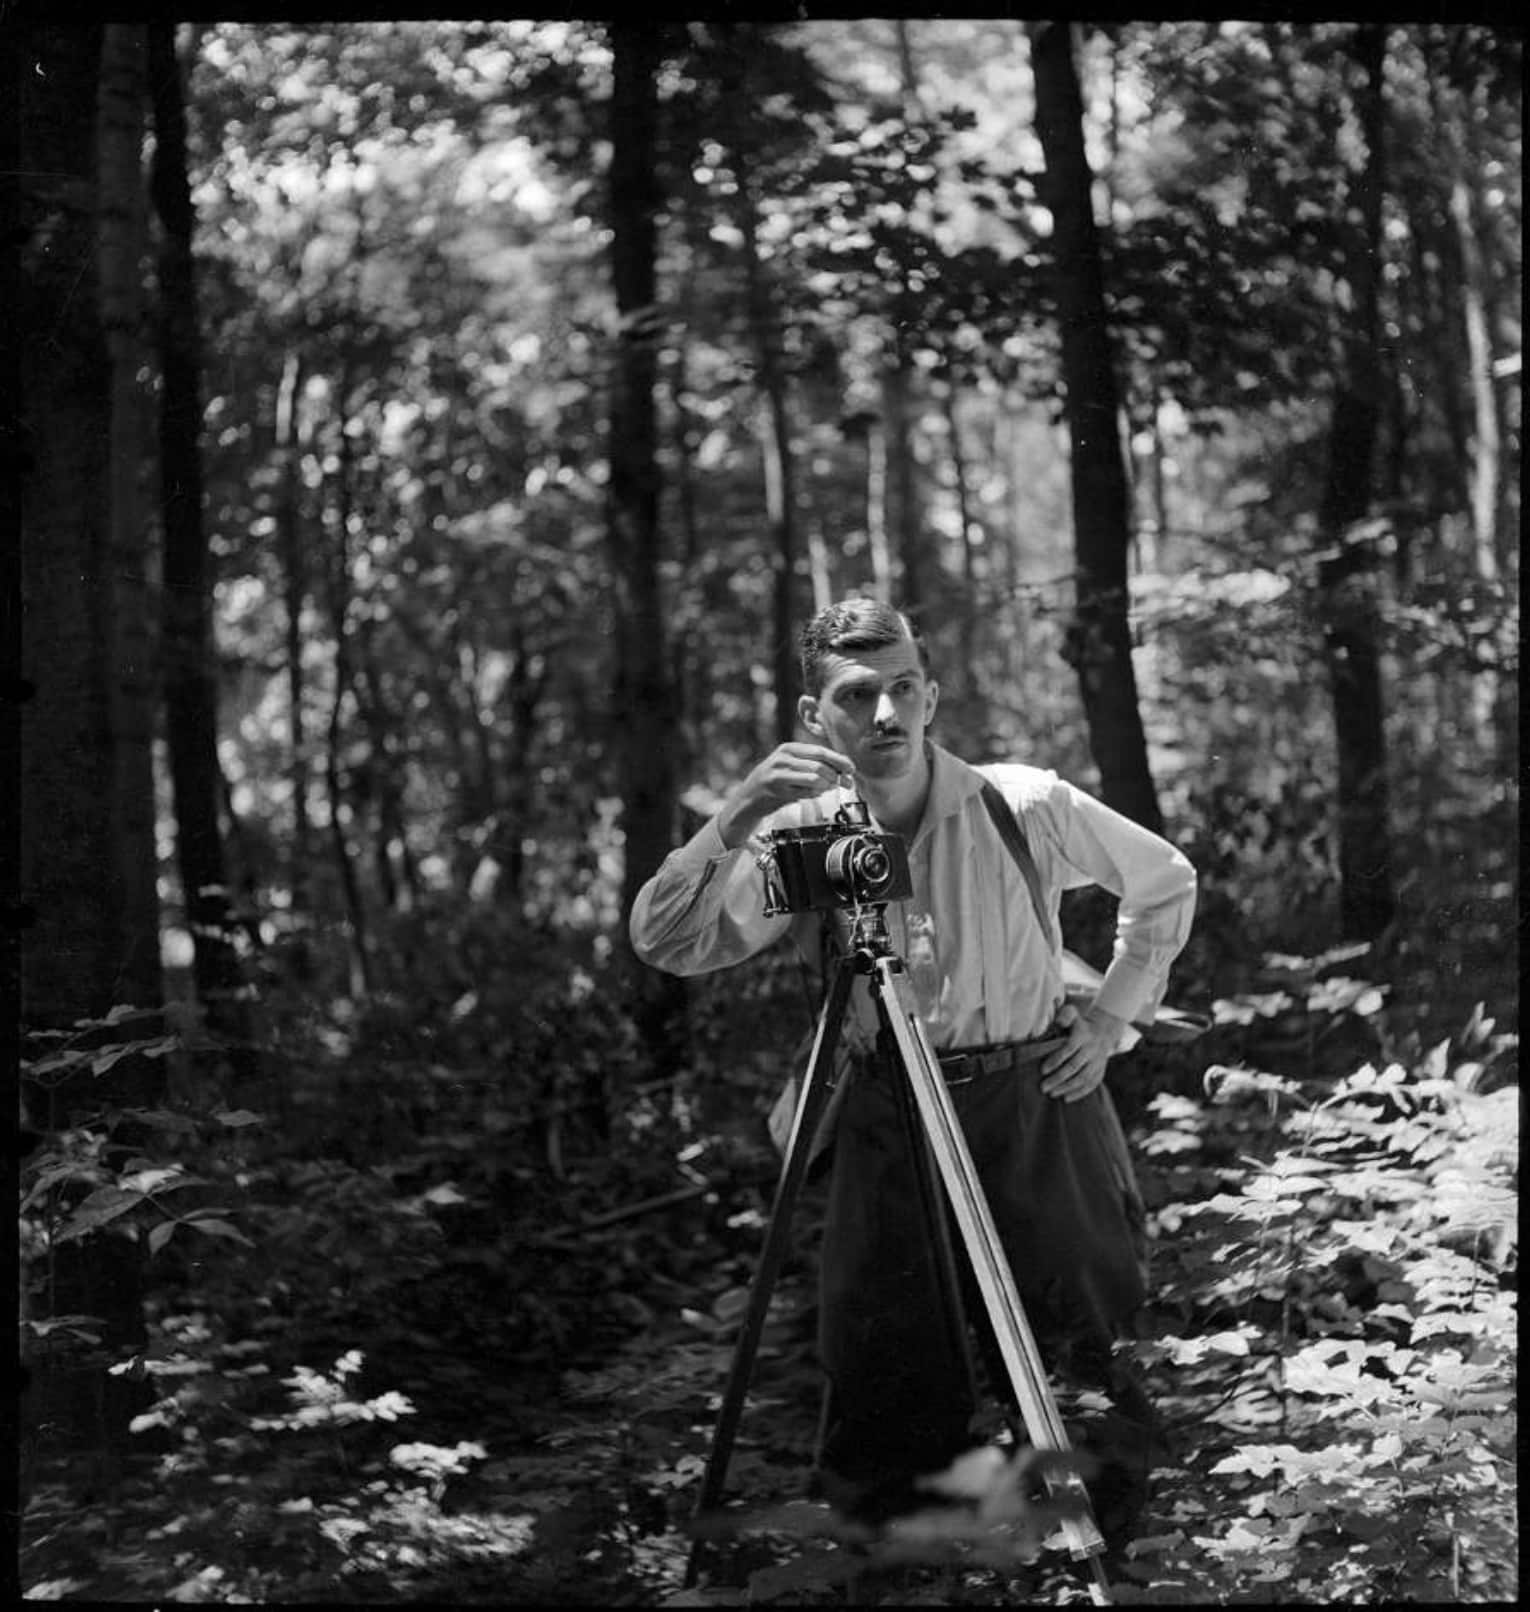 7a. <i>Kinszki Imre fényképezés közben egy erdőben</i> (“Imre Kinszki taking photographs in the forest”), 1936 © FSZEK